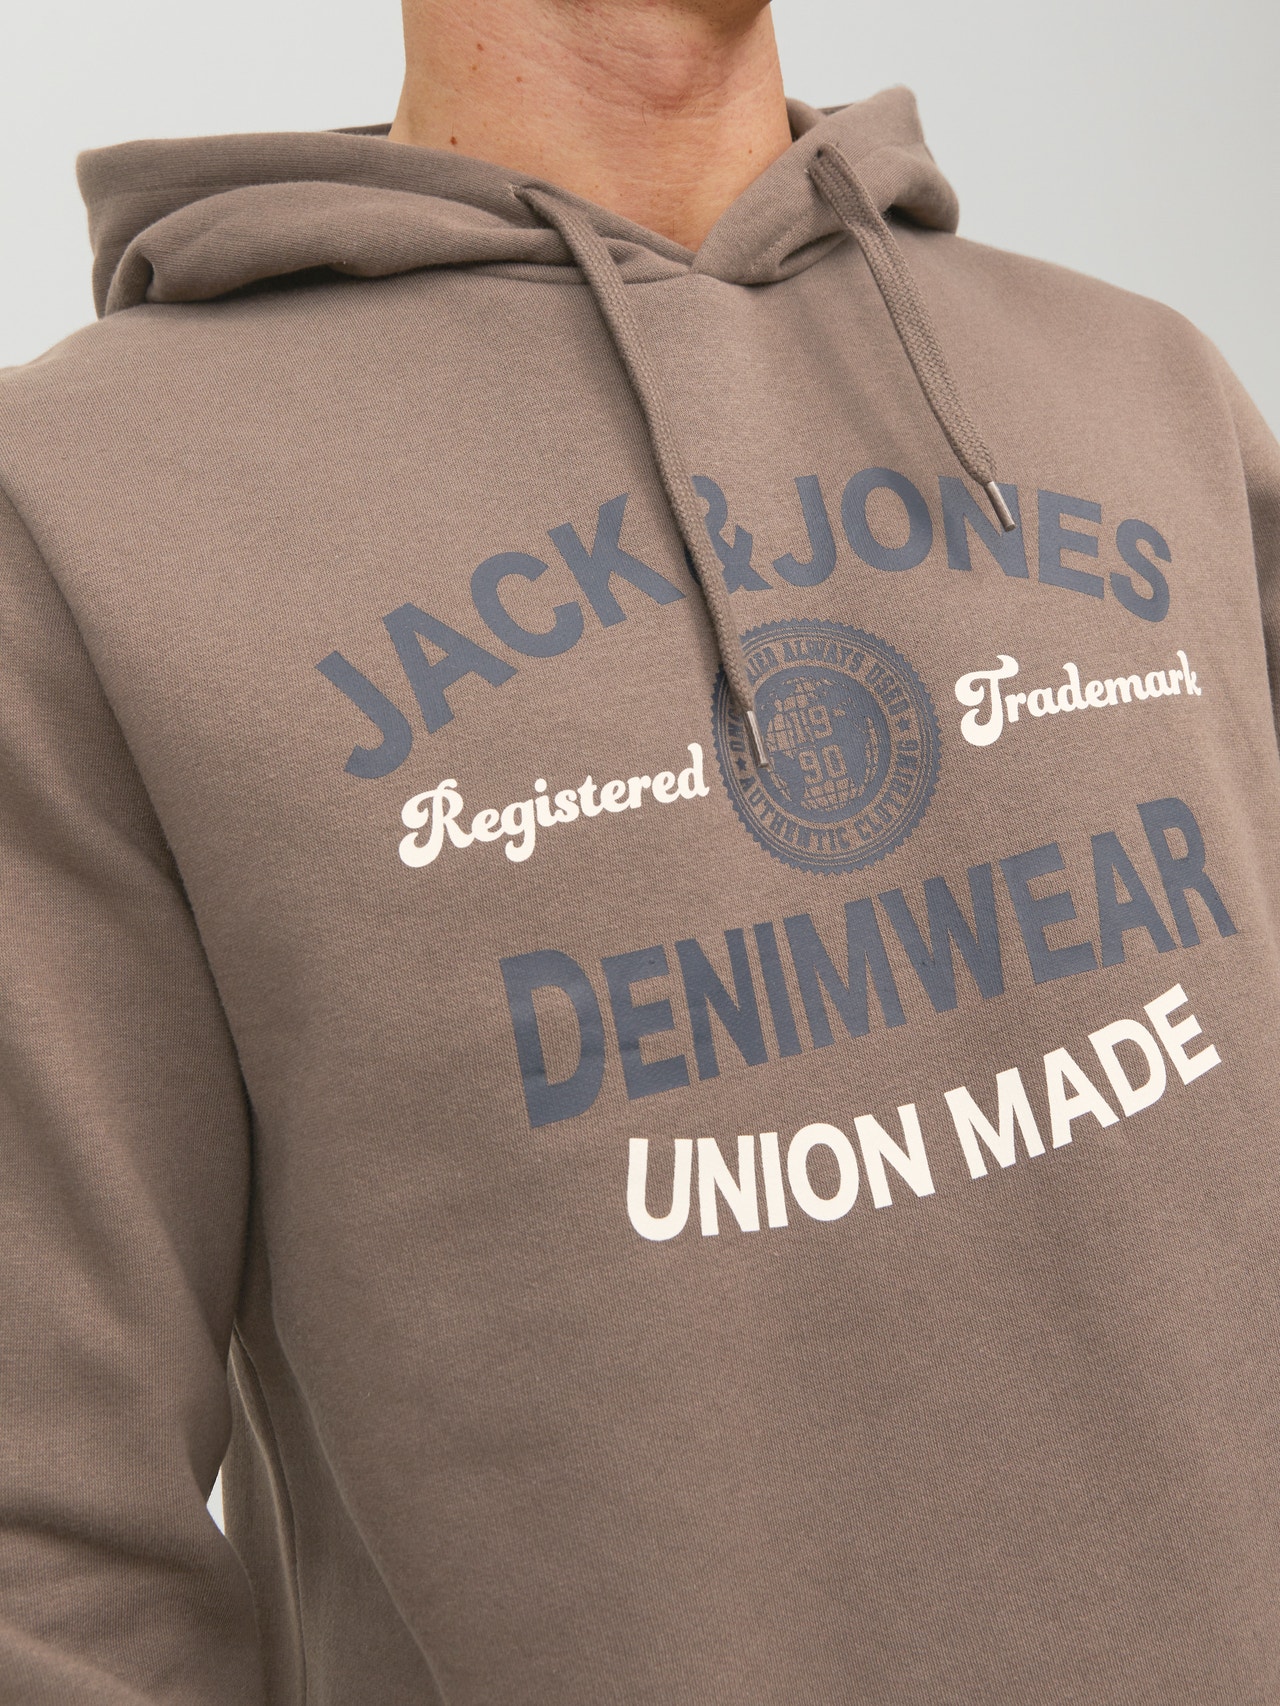 Sweat à capuche Jack & Jones pour homme, disponible en différentes  couleurs, logo poitrine à l